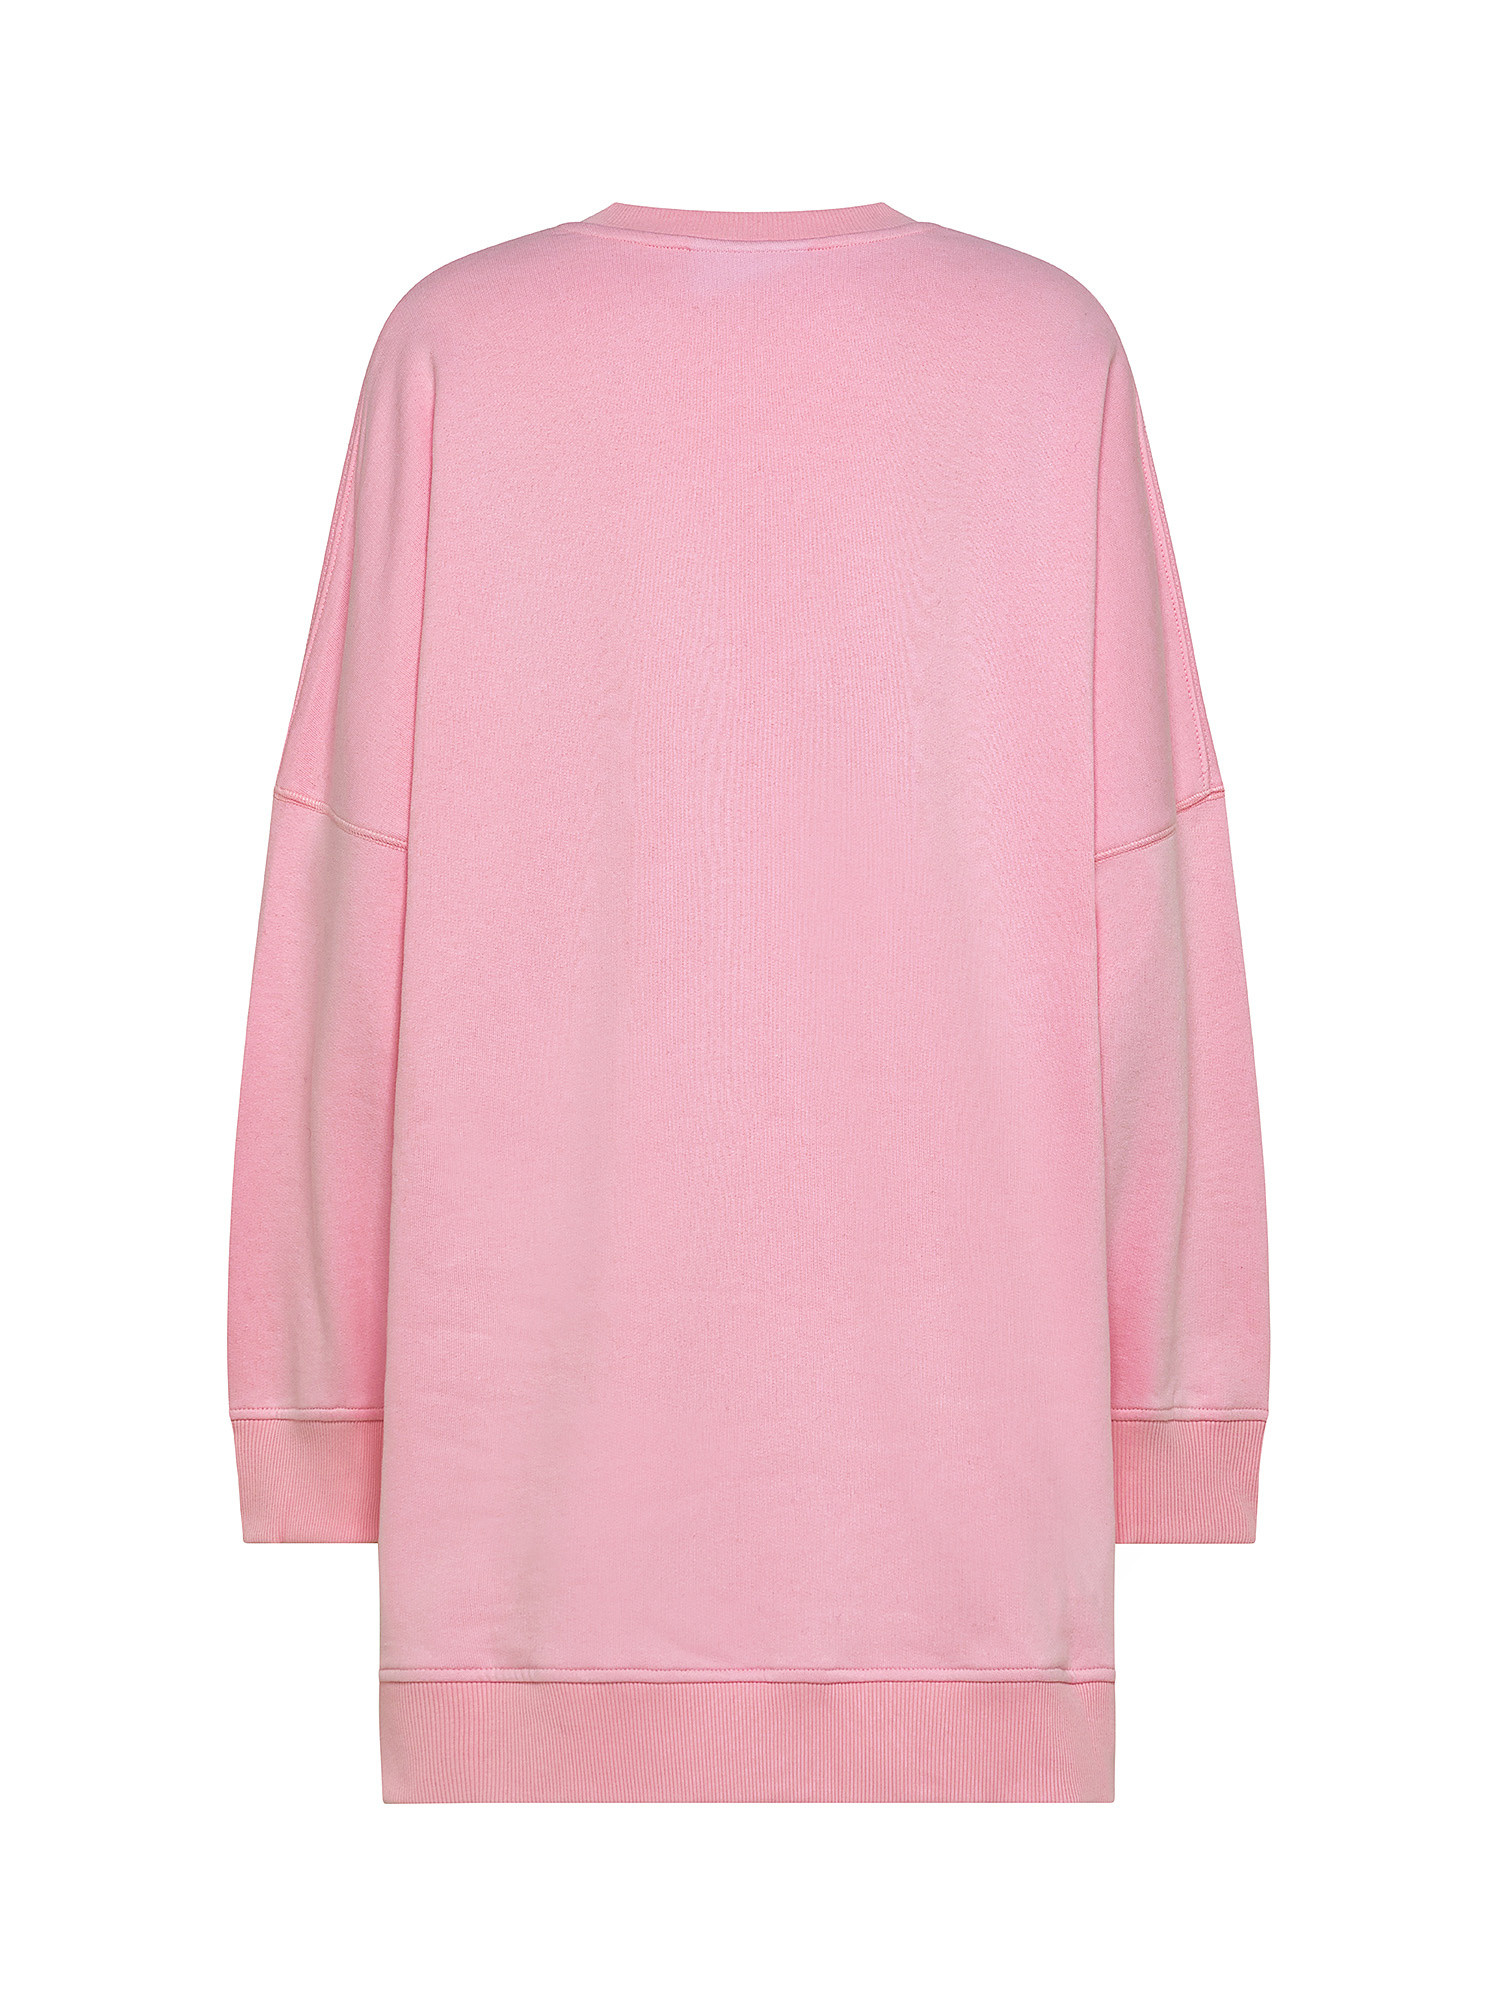 Eye Star sweatshirt, Pink, large image number 1